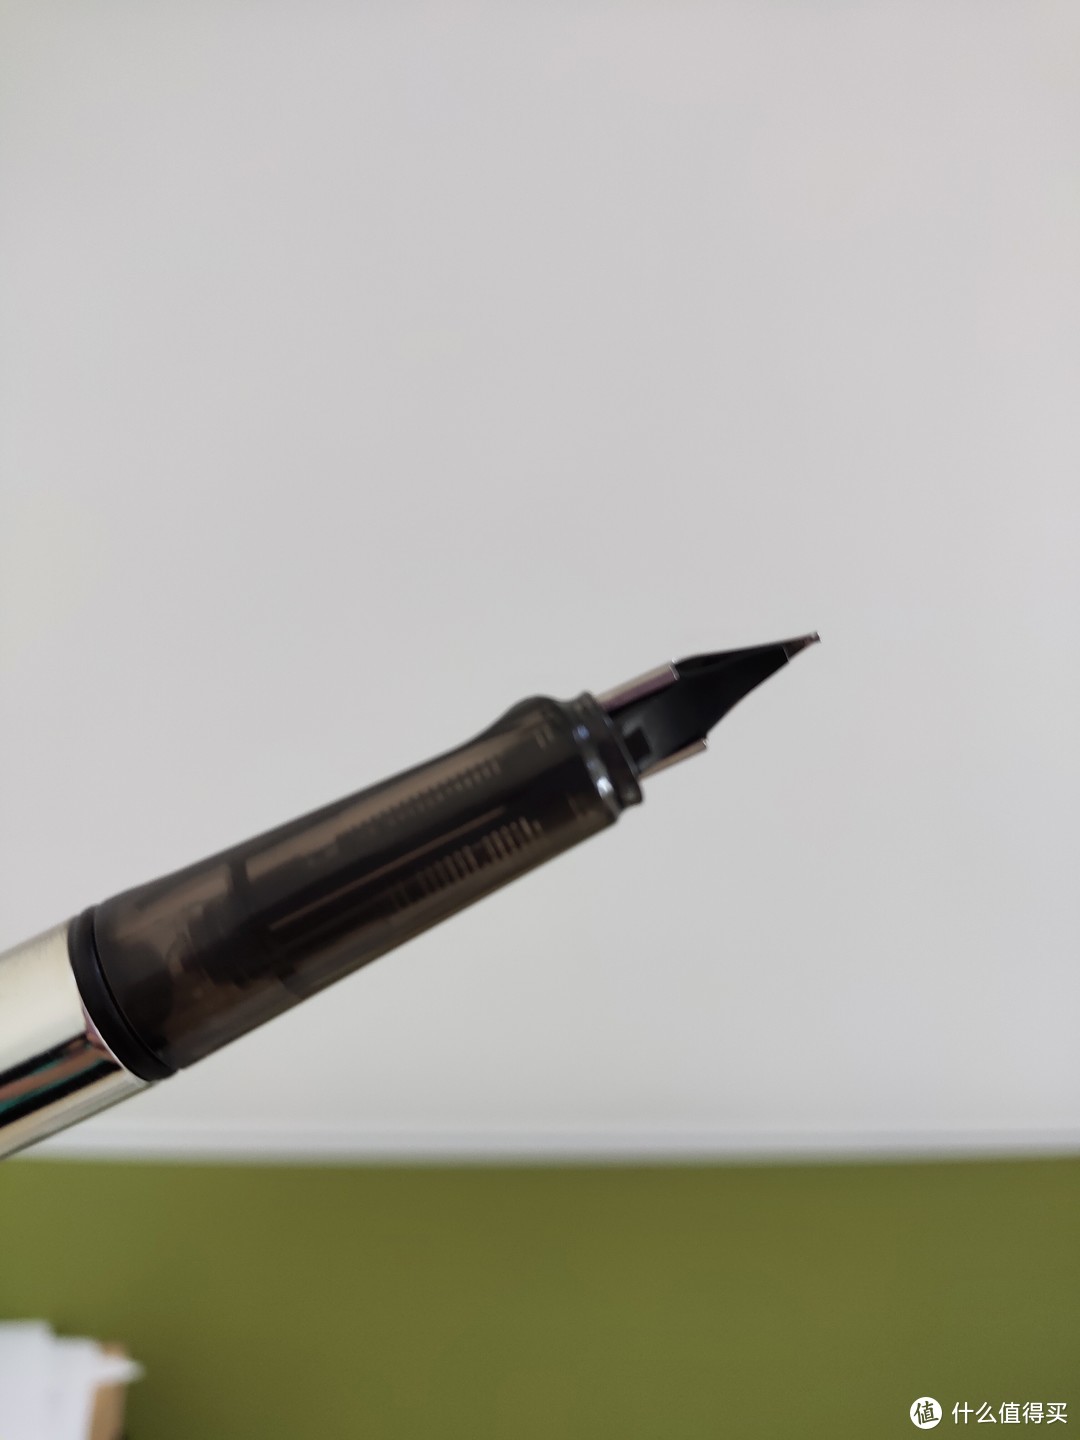 超细致的钢笔清理指南，解决堵笔、换墨烦恼